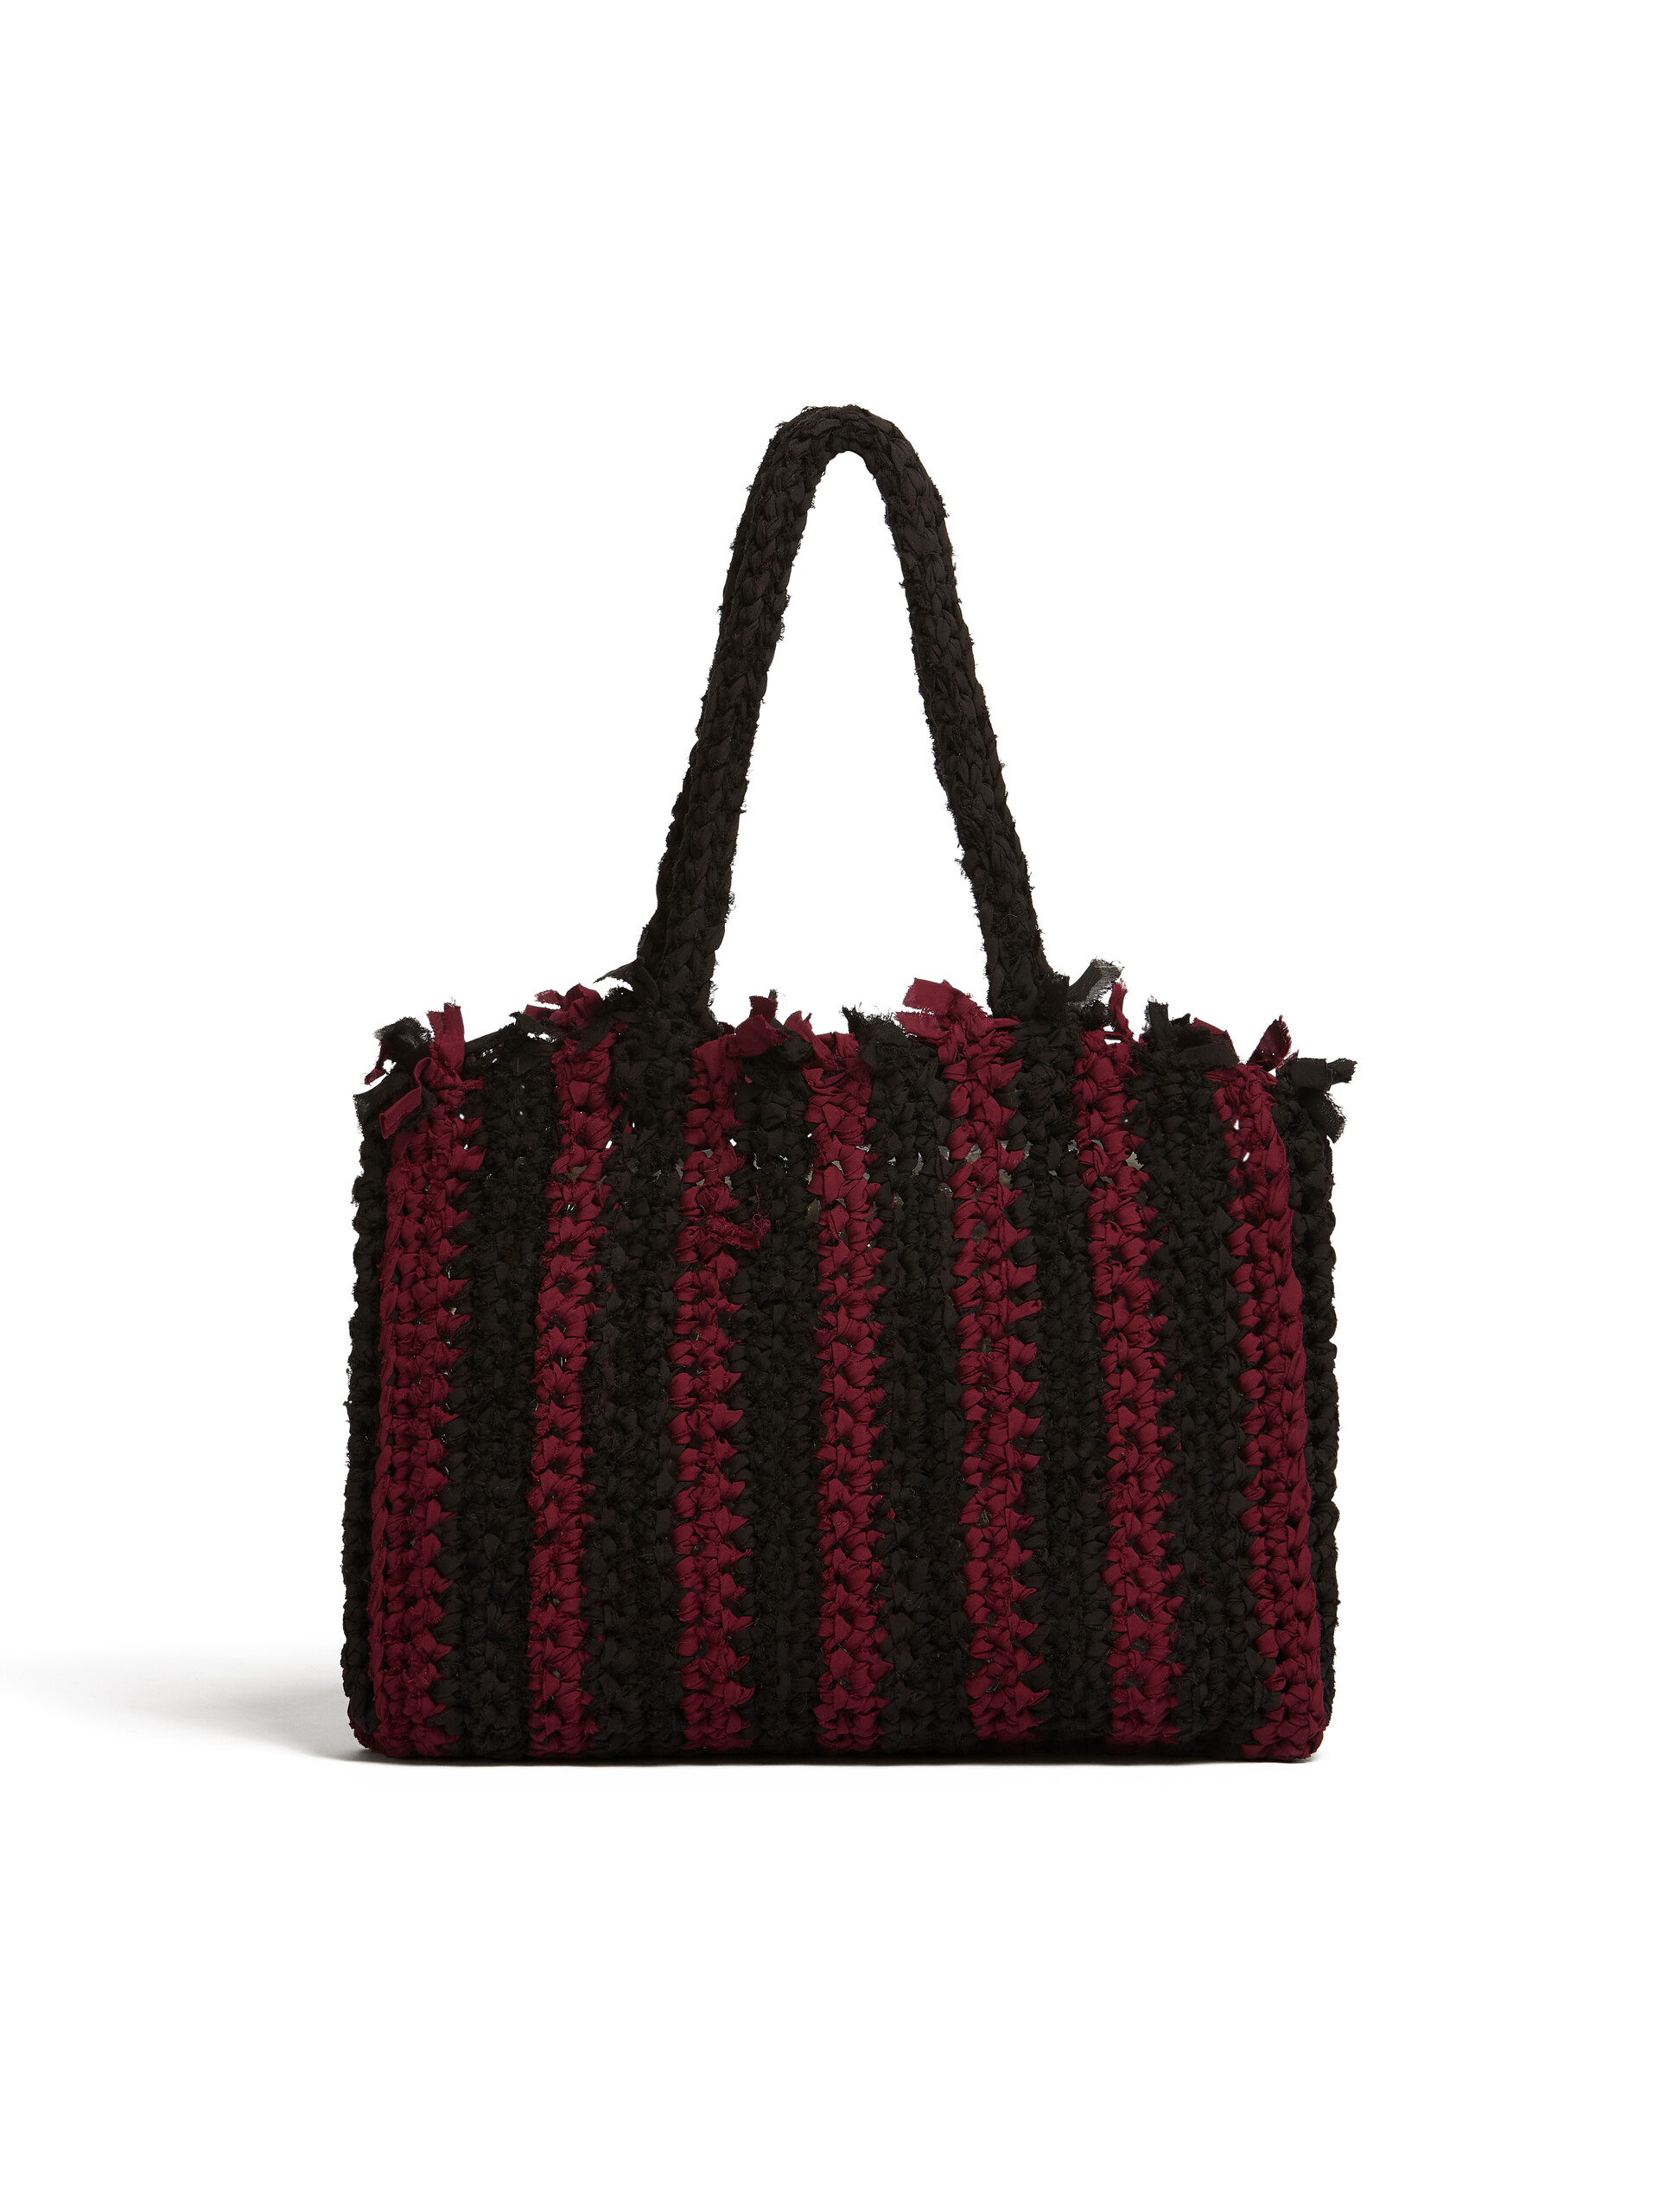 Black and burgundy cotton MARNI MARKET bag - Bags - Image 3